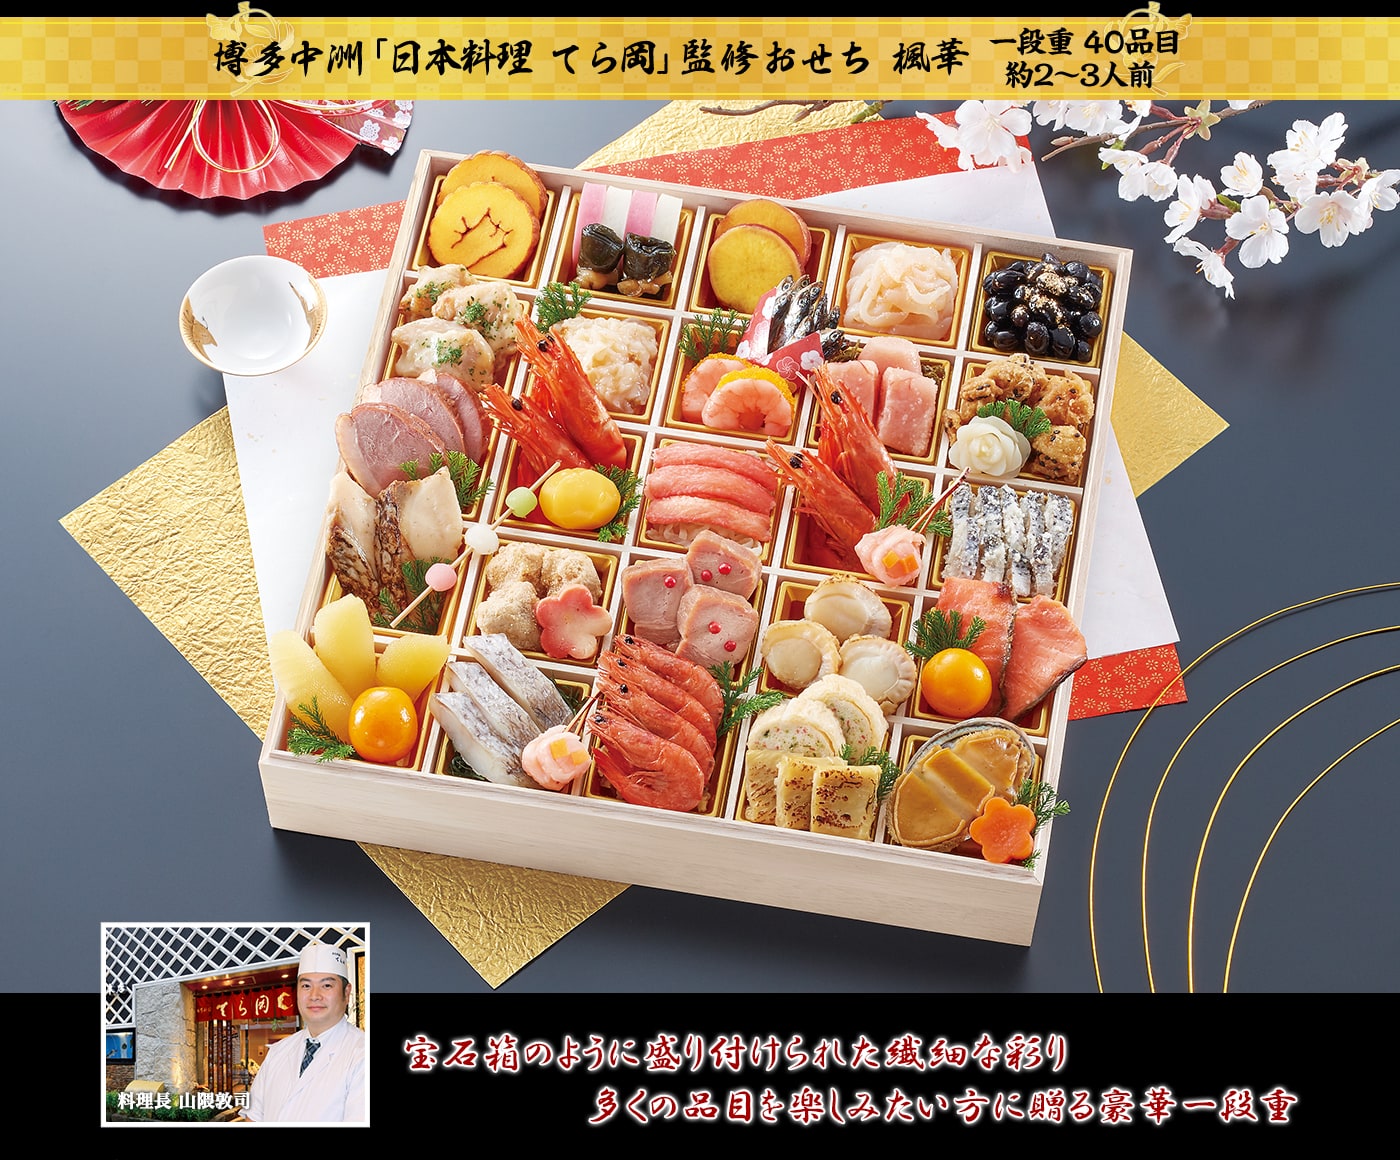 博多中洲「日本料理 てら岡」監修おせち 楓華 宝石箱のように盛り付けられた繊細な彩り多くの品目を楽しみたい方に贈る豪華一段重